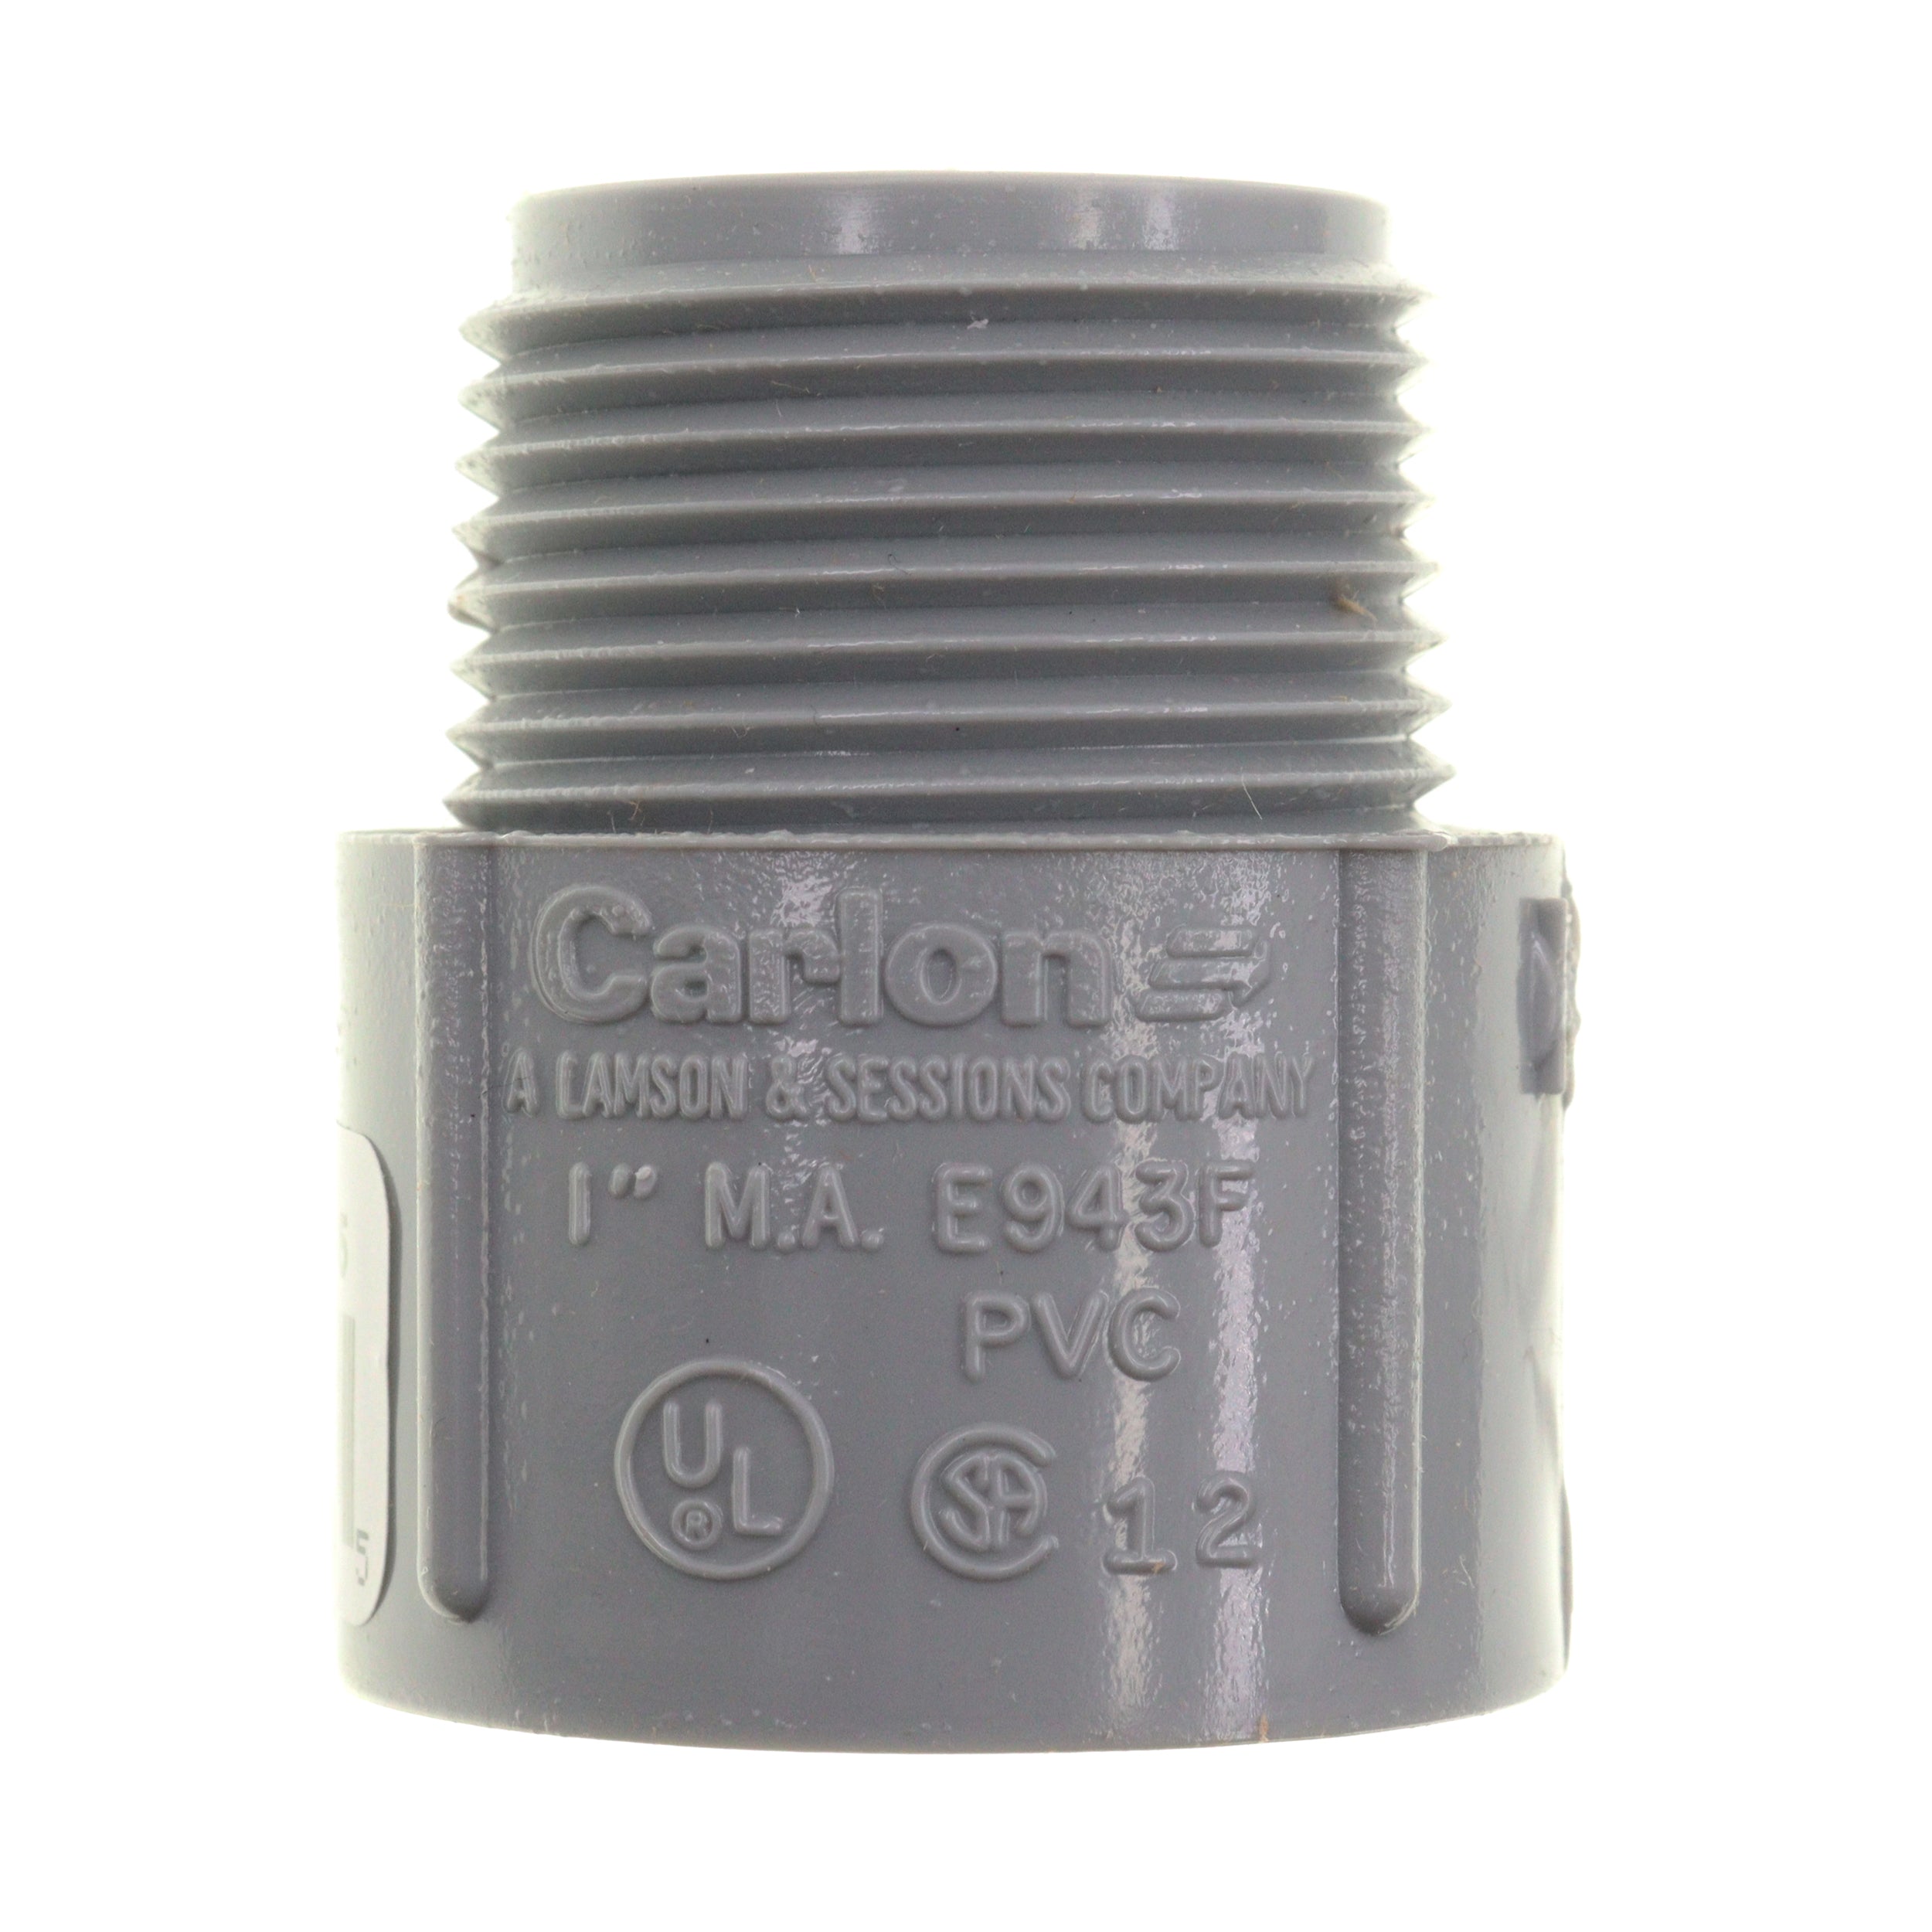 Carlon, CARLON E943F NON-METALLIC PVC THREADED MA MALE ADPATER, 1-INCH, GRAY (30-PACK)